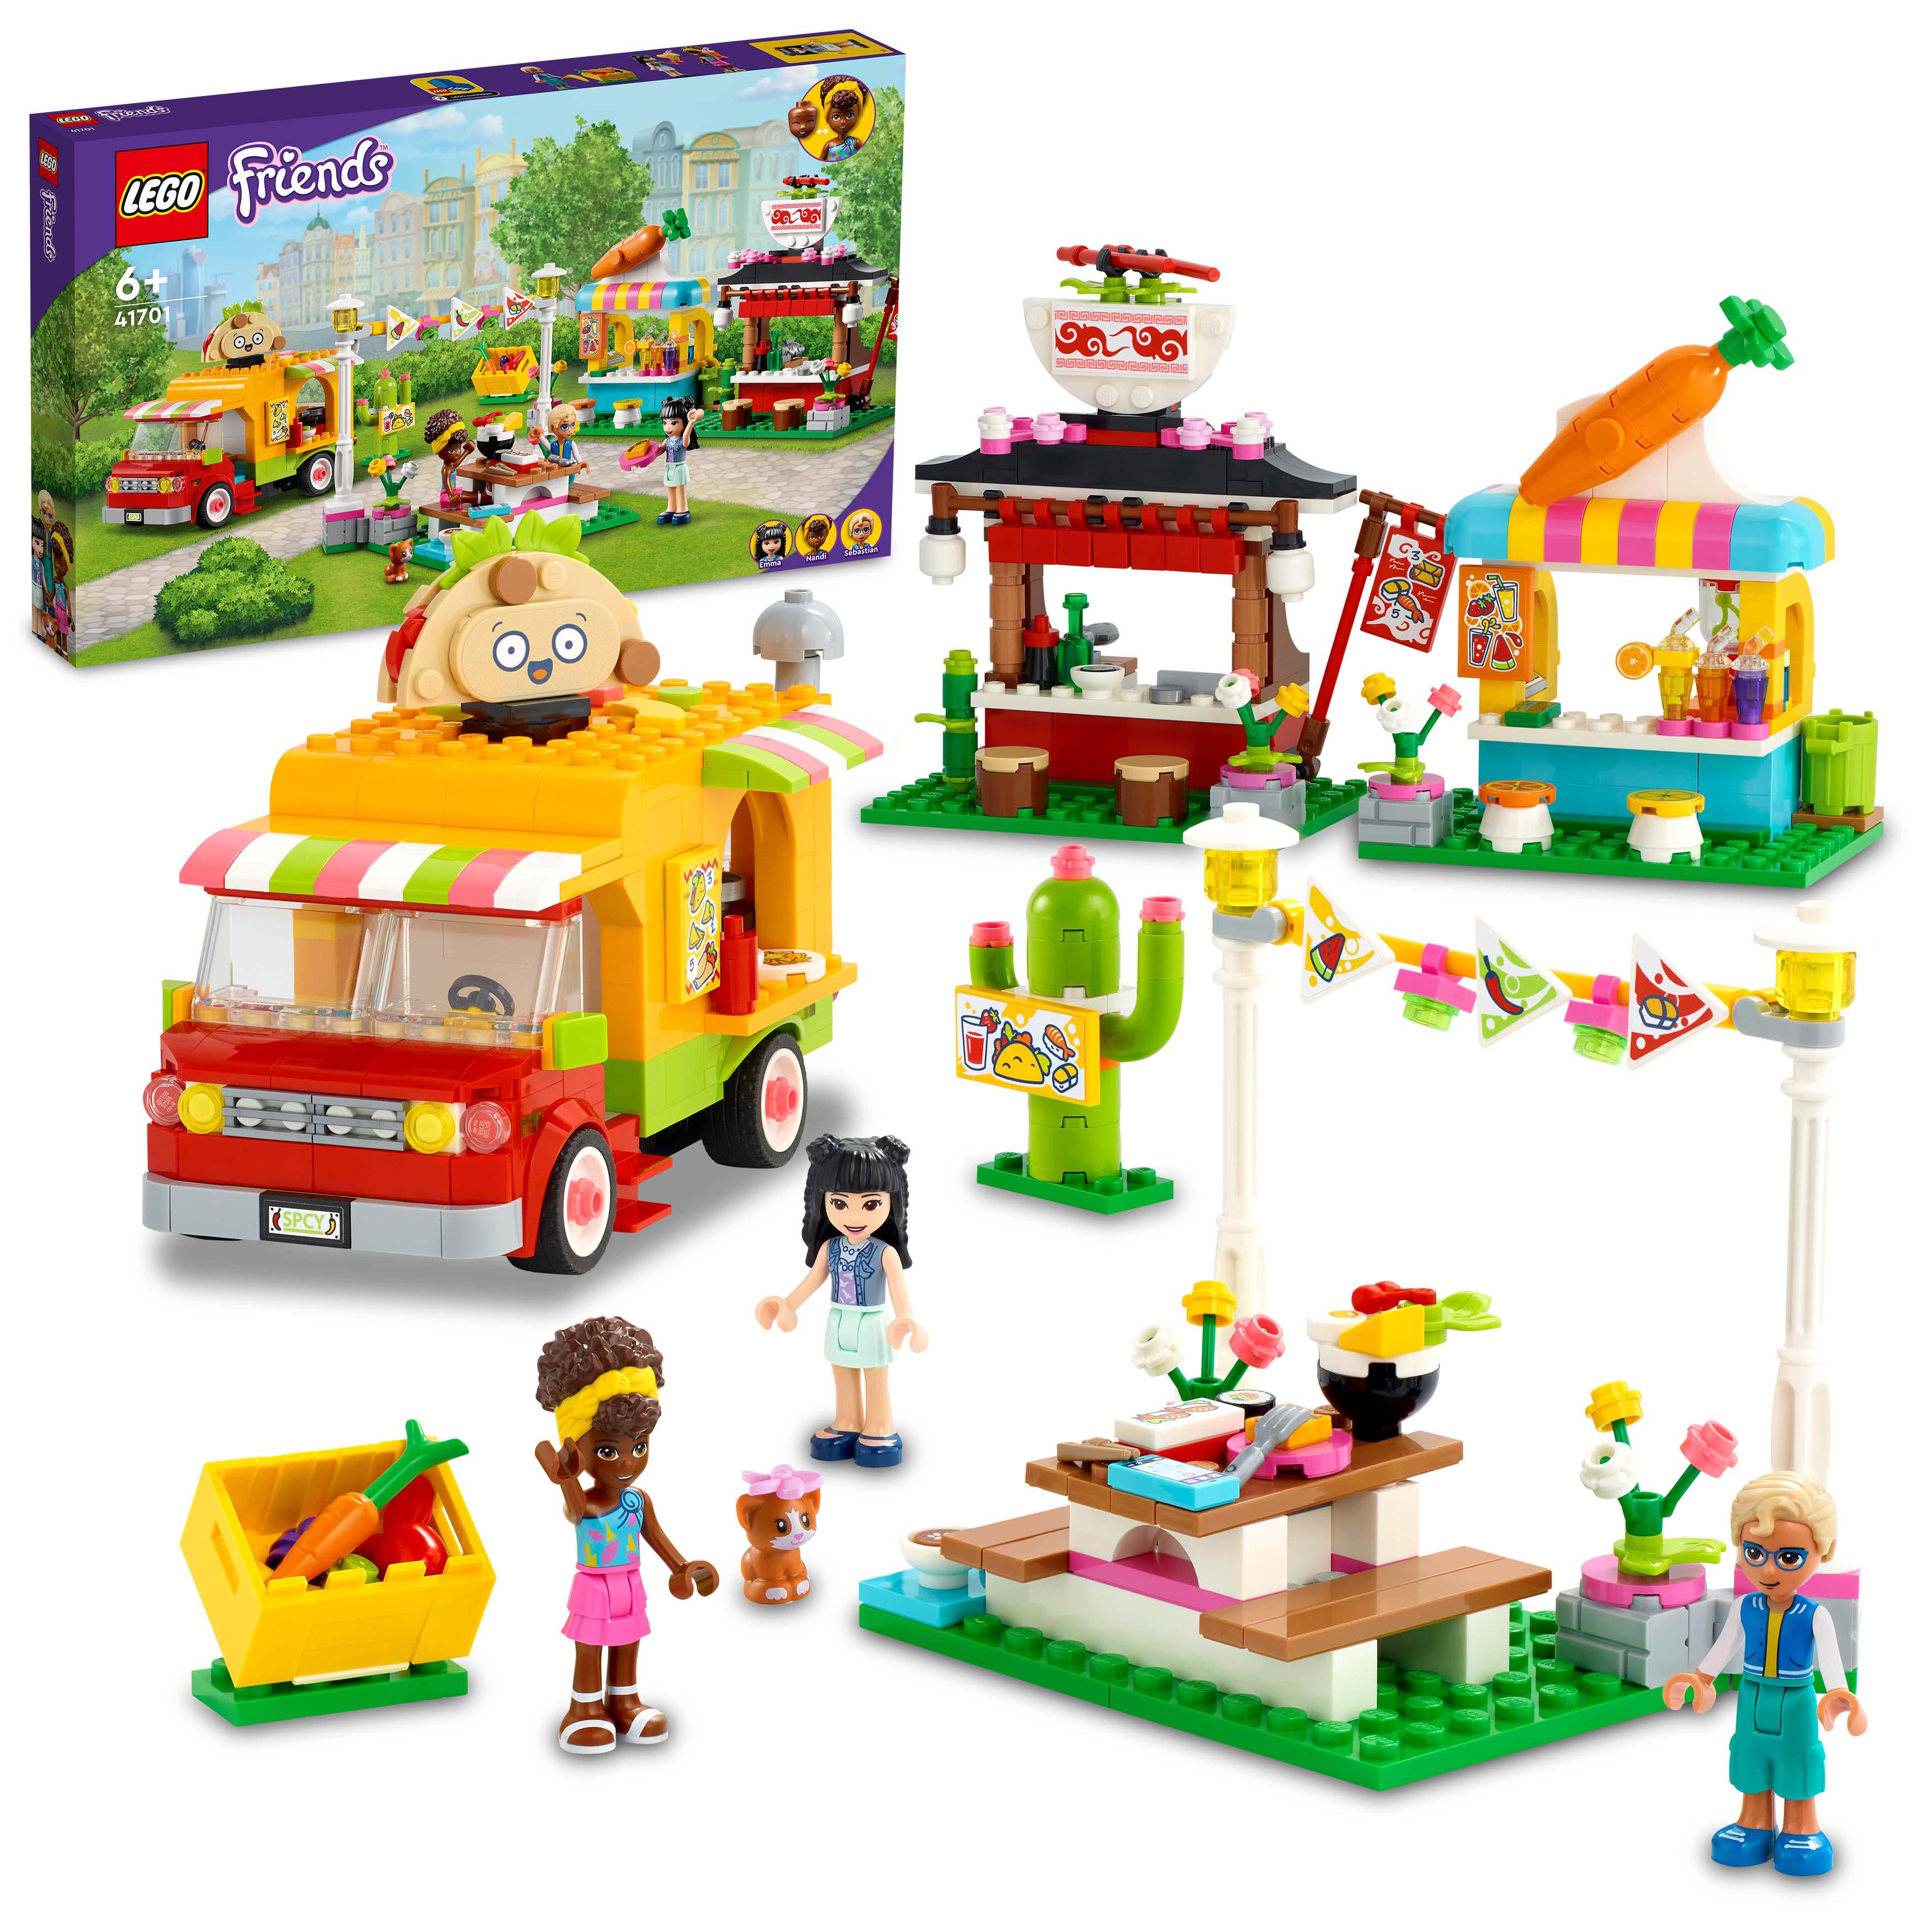 LEGO Friends Il Mercato dello Street Food, Include Camion dei Tacos e Bar dei Fr 41701, , large